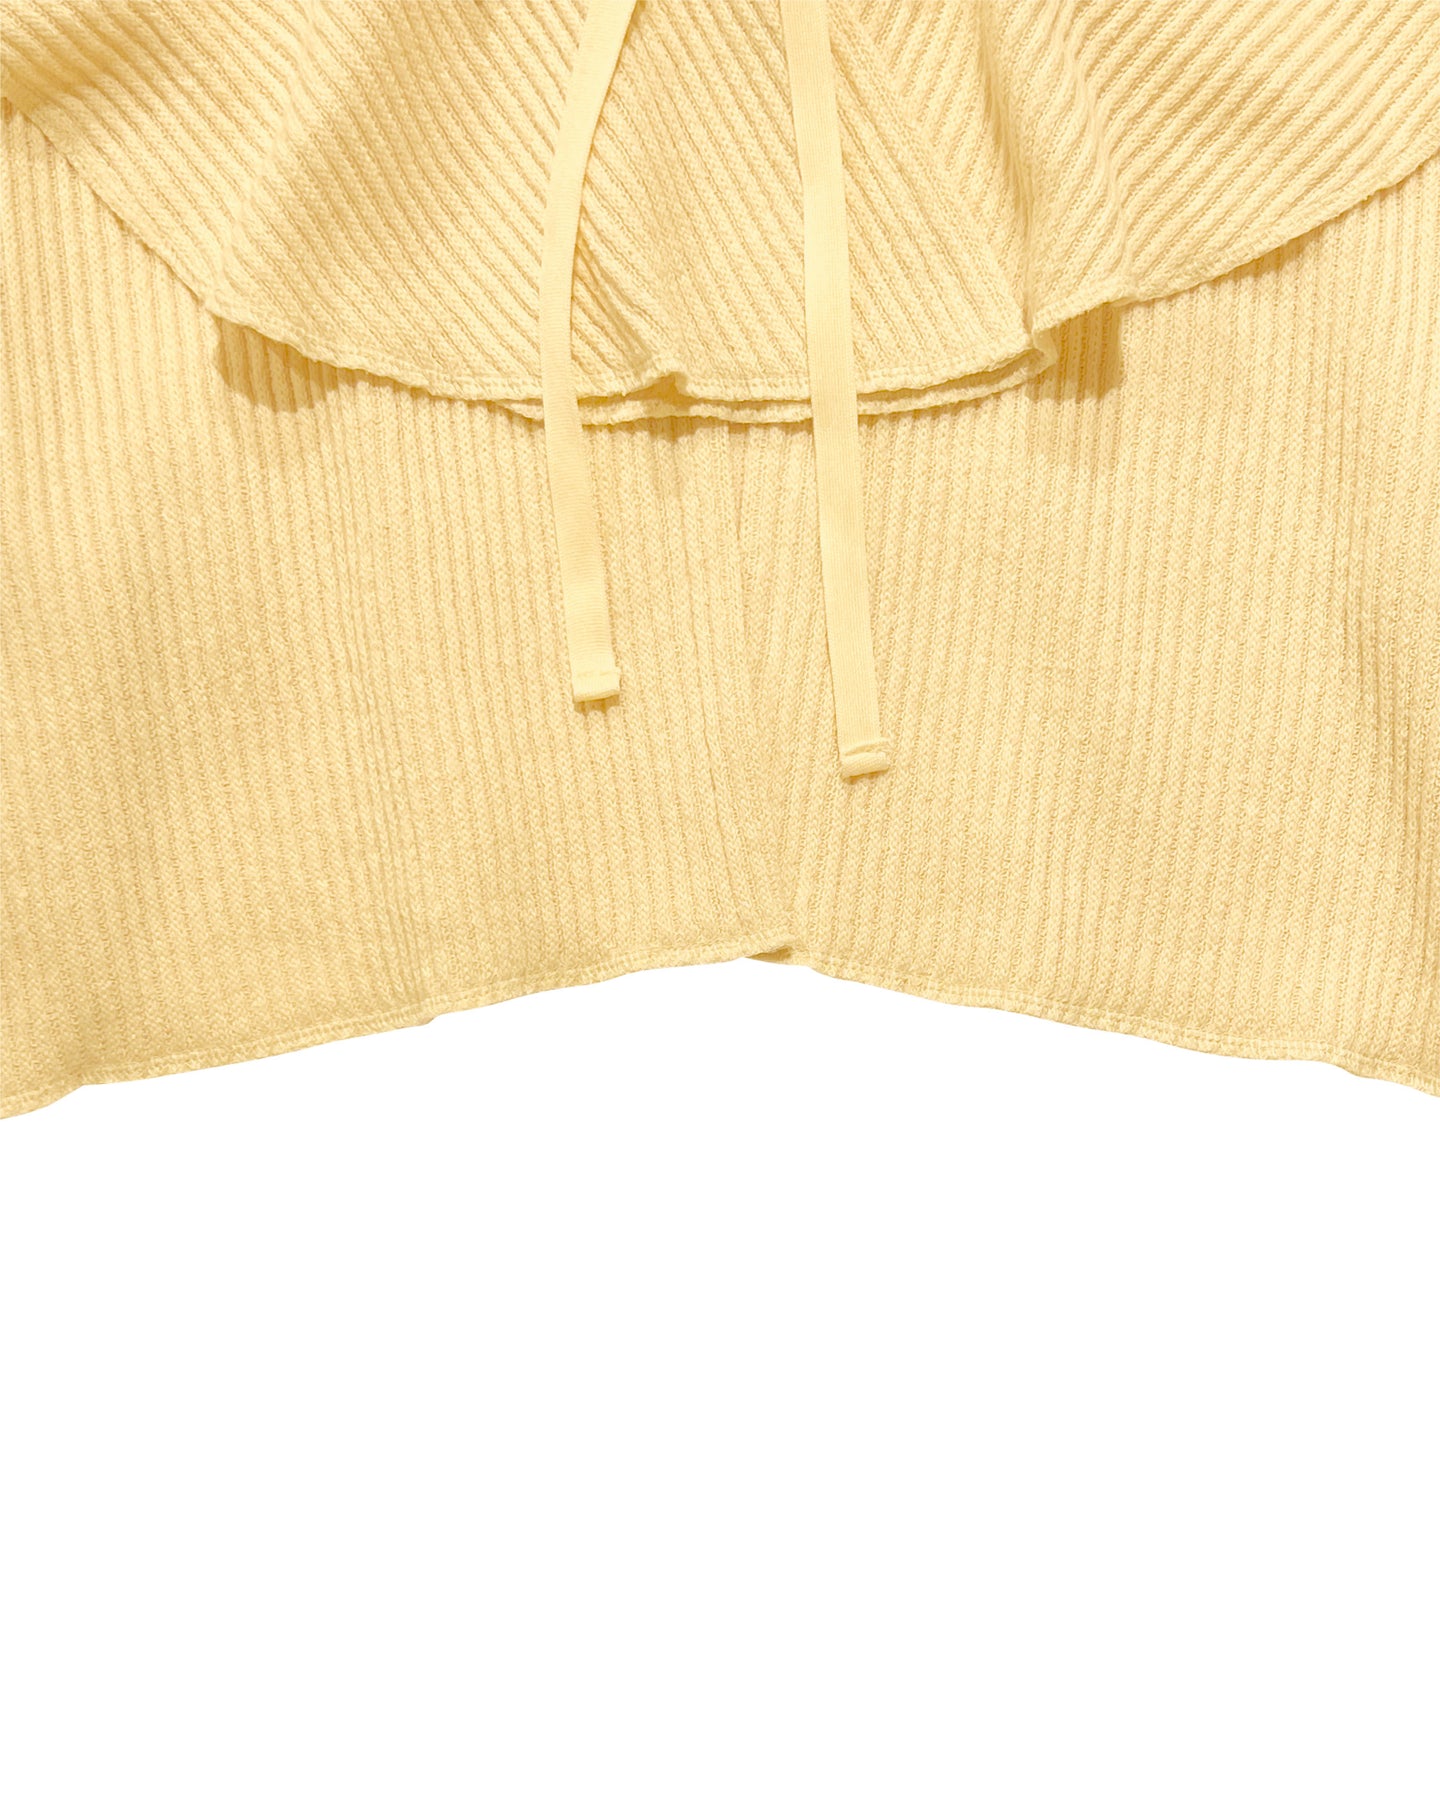 Raffle collar knit cardigan (Yellow) – POPPY